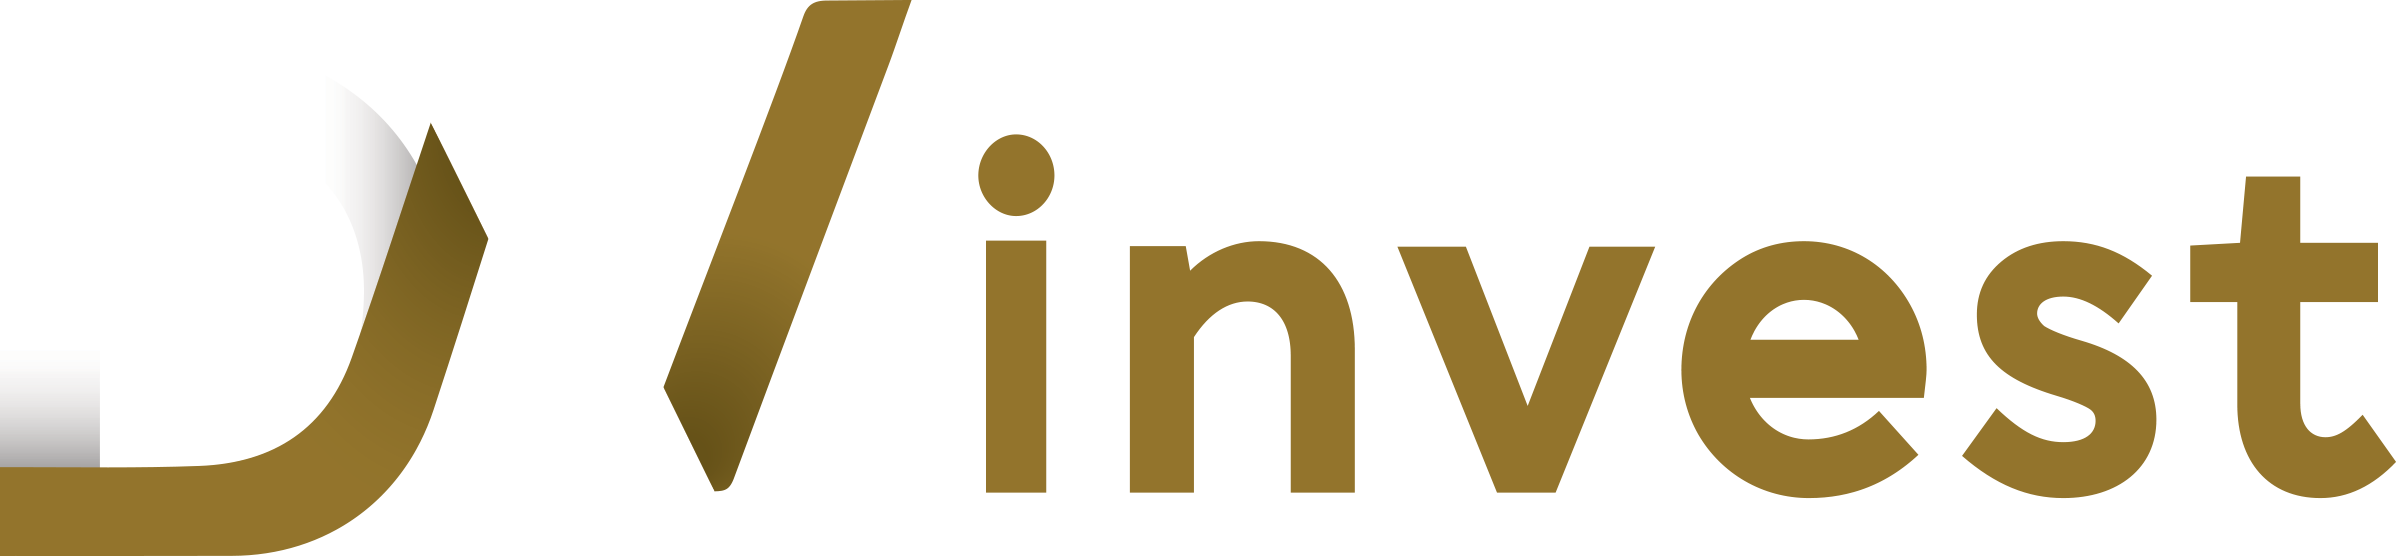 DVInvest - Volume – Monitore o rastro dos grandes investidores